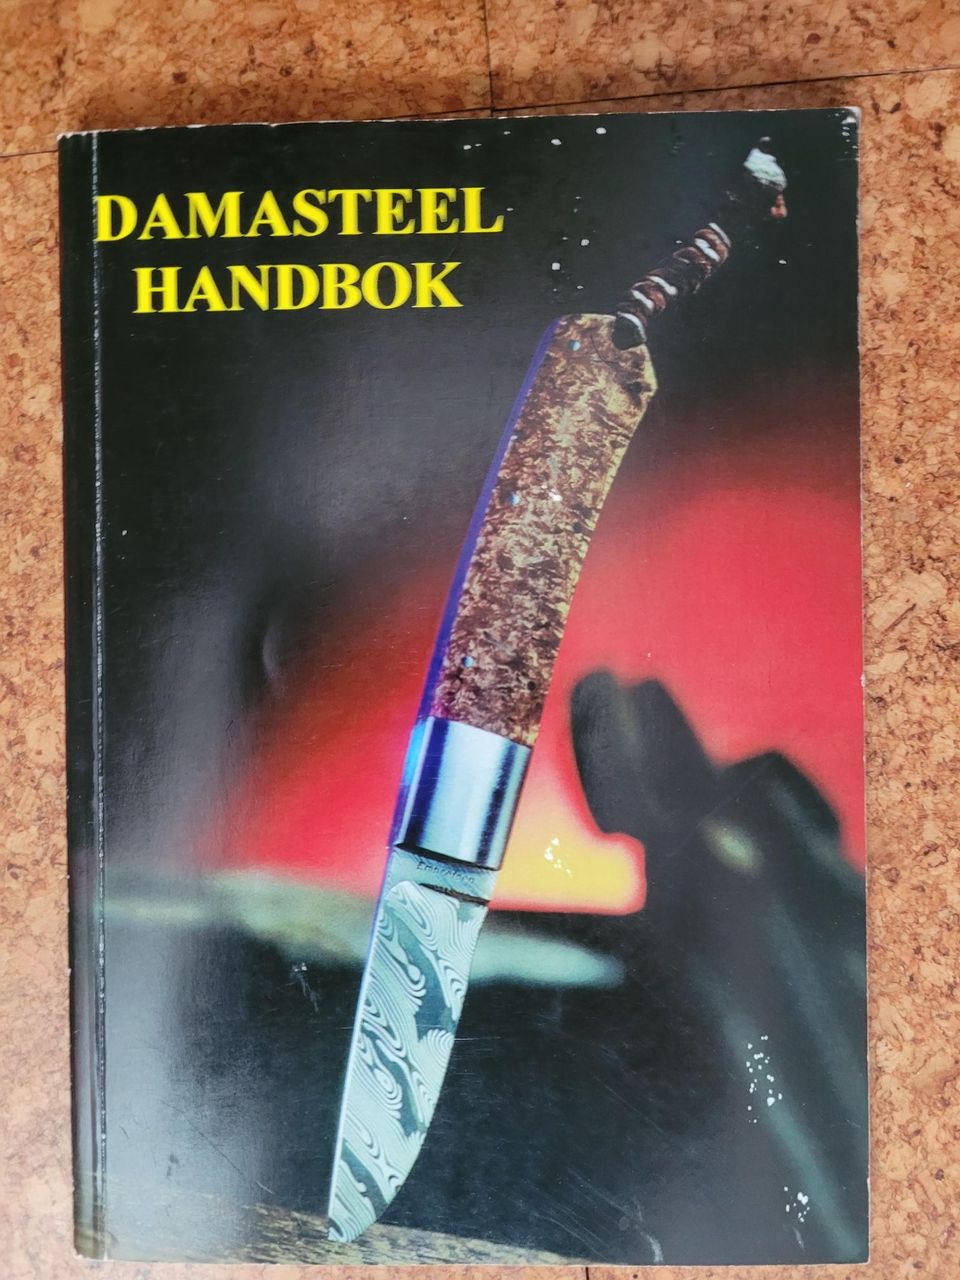 Mattias Billgren, Damasteel handbook, myös damastiterästä